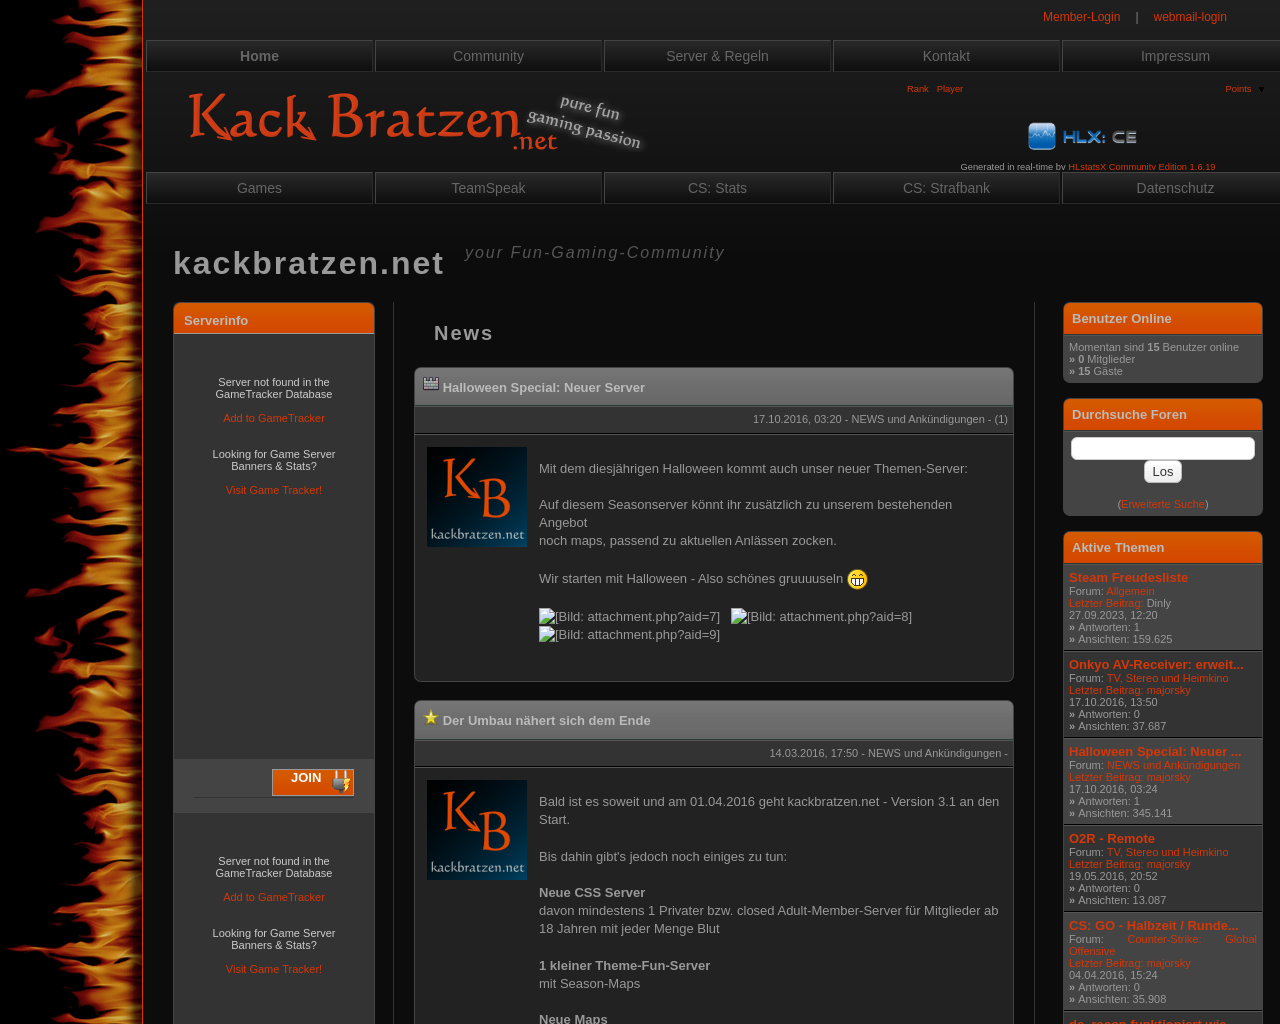 kackbratzen.net